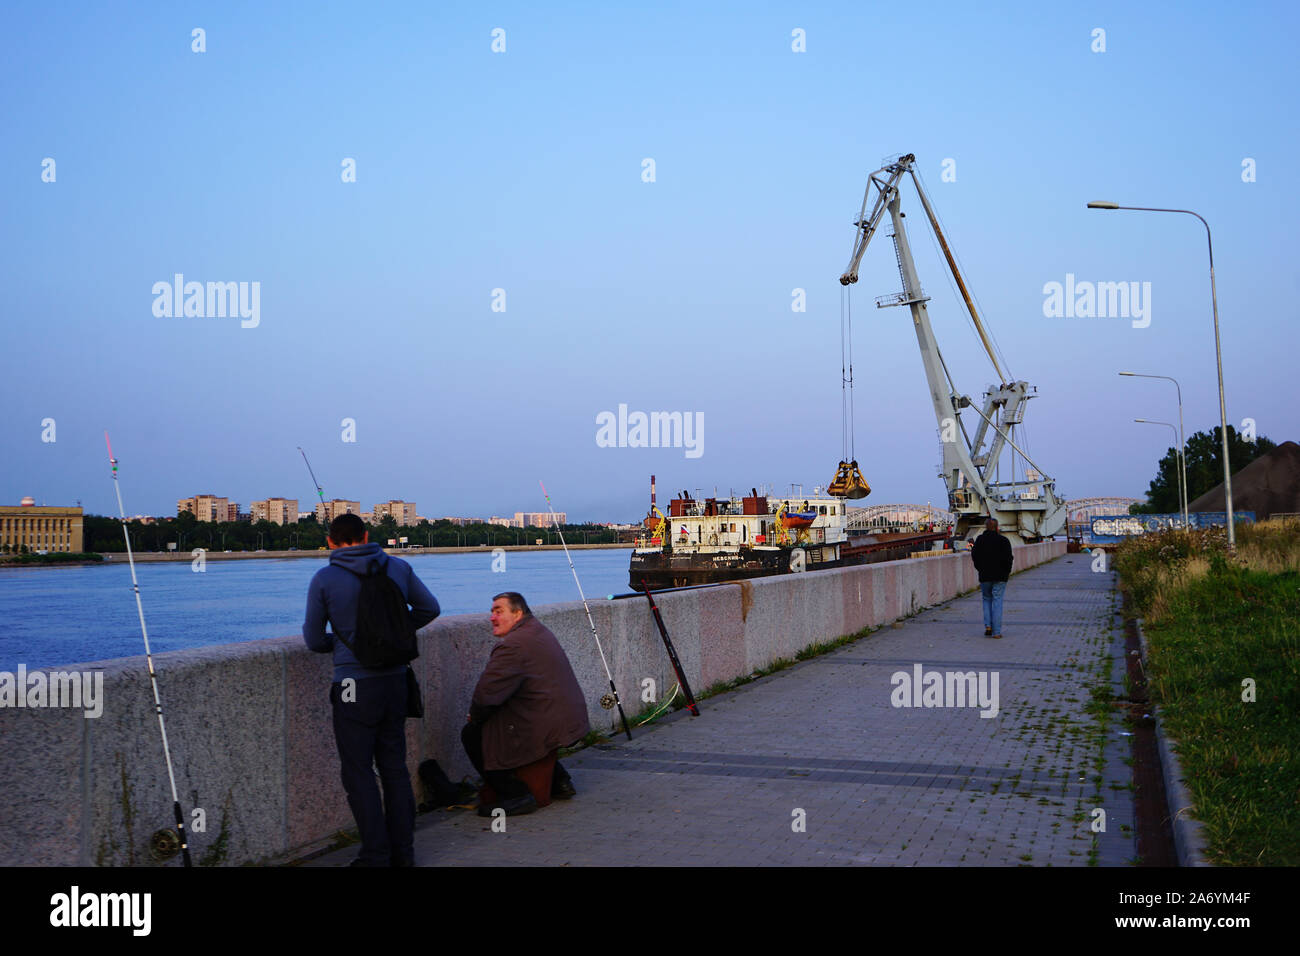 Zwei Angler am Ufer der Newa, hinten Entladen von Kohle von einem Flussfrachter, Ufer der Newa, Sankt Petersburg, Russland Stockfoto